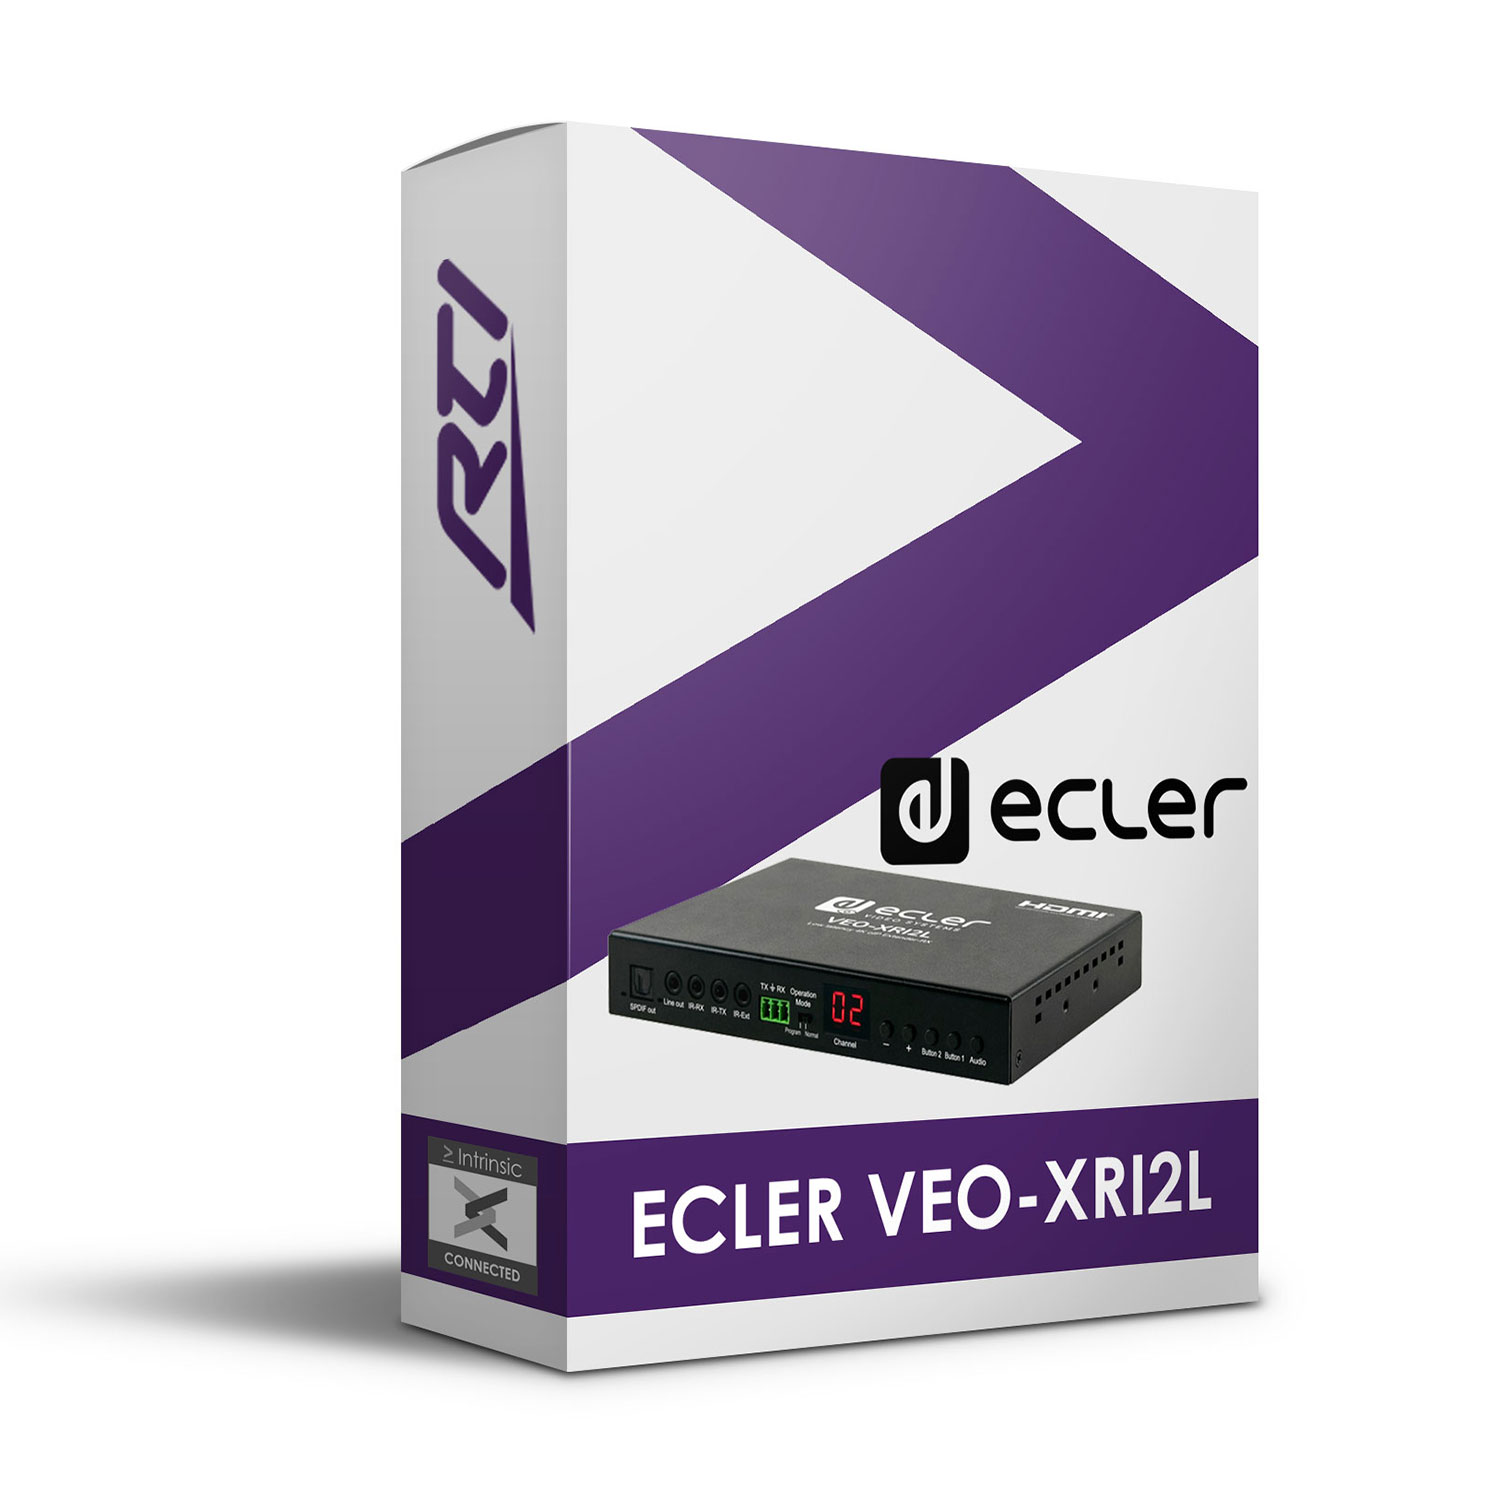 Ecler VEO-XRI2L Driver for RTI